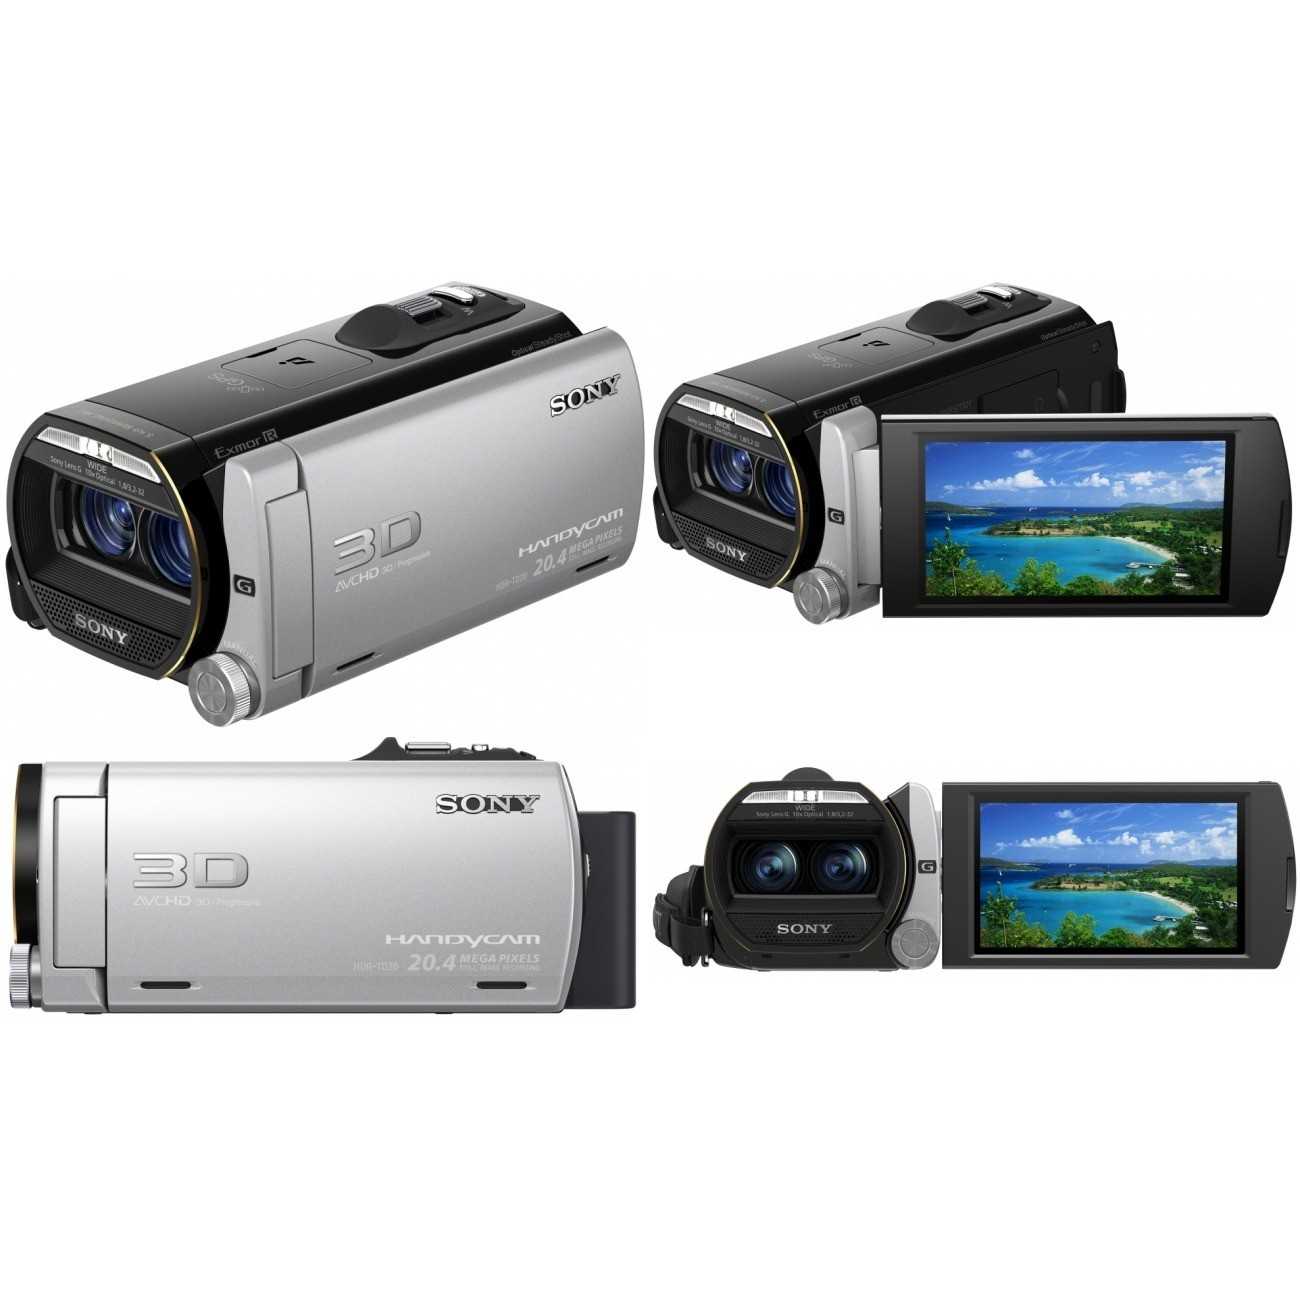 Видеокамера Sony HDR-TD20VE - подробные характеристики обзоры видео фото Цены в интернет-магазинах где можно купить видеокамеру Sony HDR-TD20VE